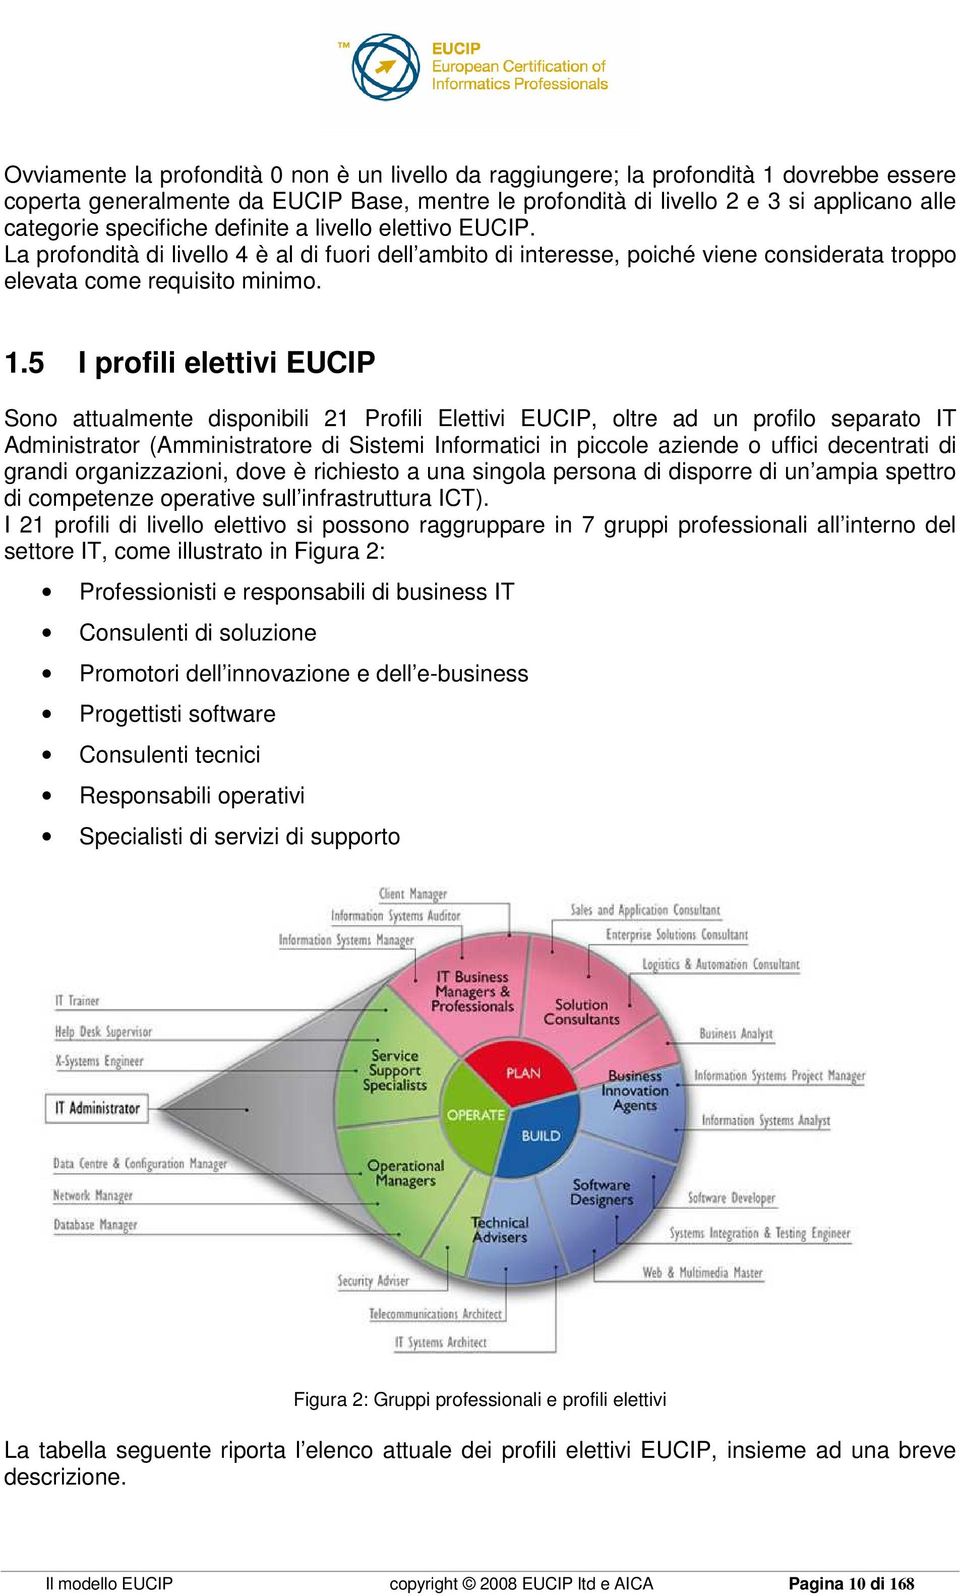 5 I profili elettivi EUCIP Sono attualmente disponibili 21 Profili Elettivi EUCIP, oltre ad un profilo separato IT Administrator (Amministratore di Sistemi Informatici in piccole aziende o uffici